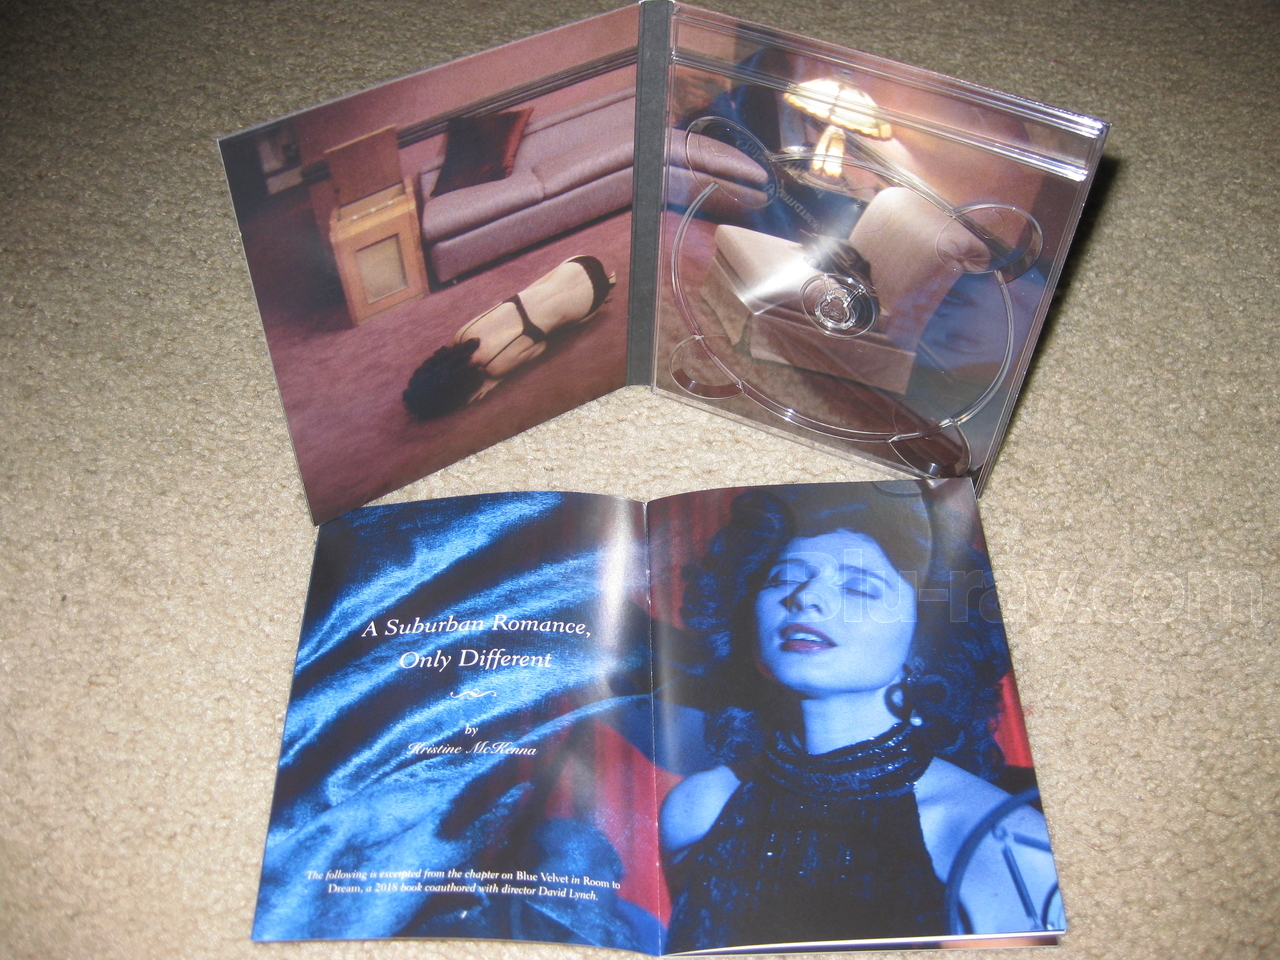 Blue Velvet (1986) dvd cover Wild at Heart (1990) dvd cover